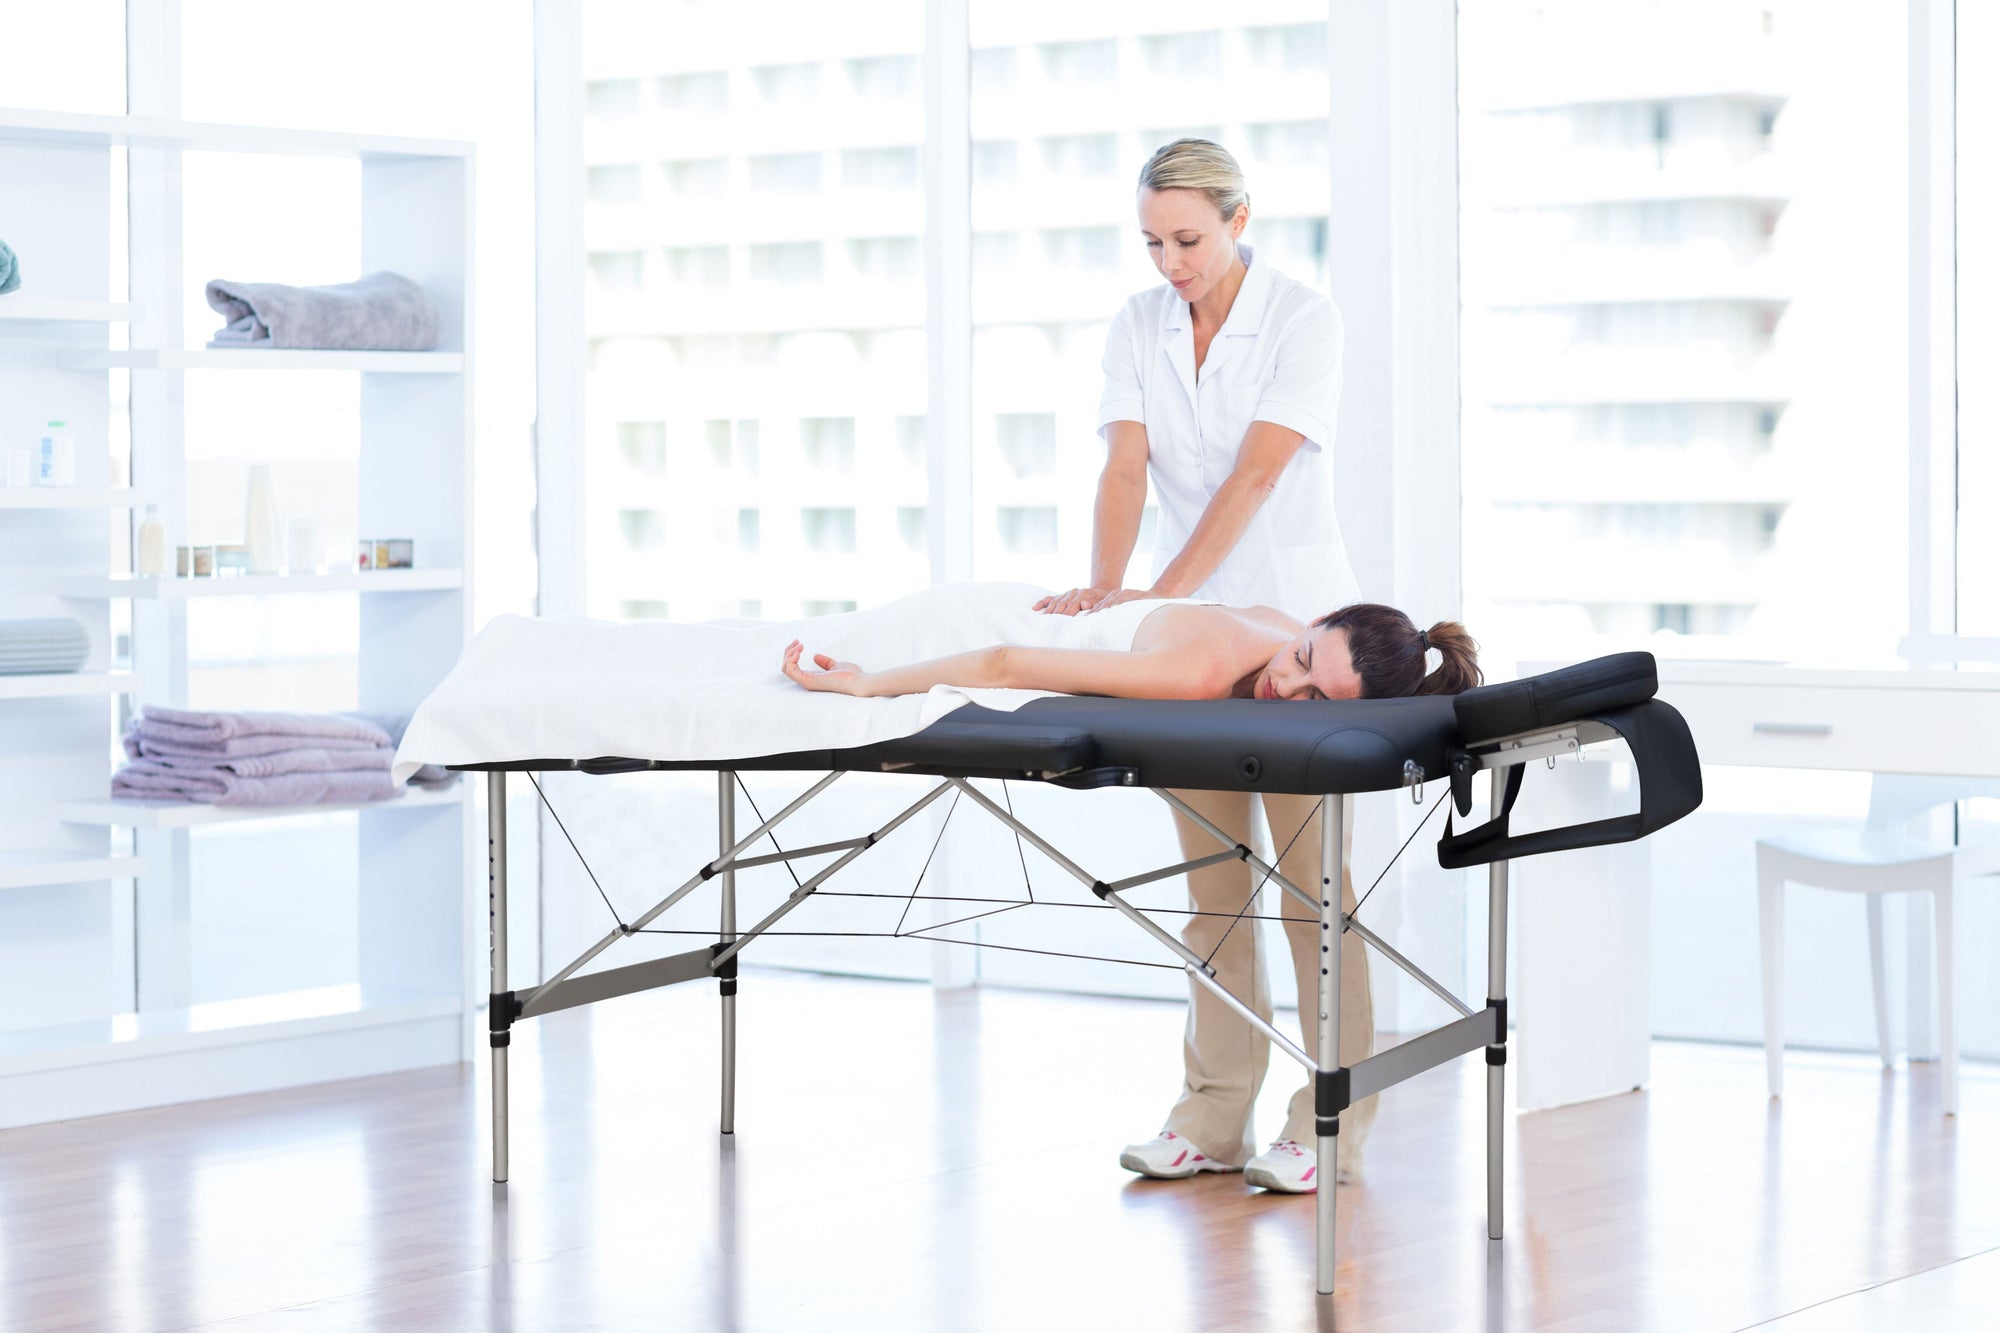 Lettino da massaggio e lettino per trattamenti professionale in alluminio